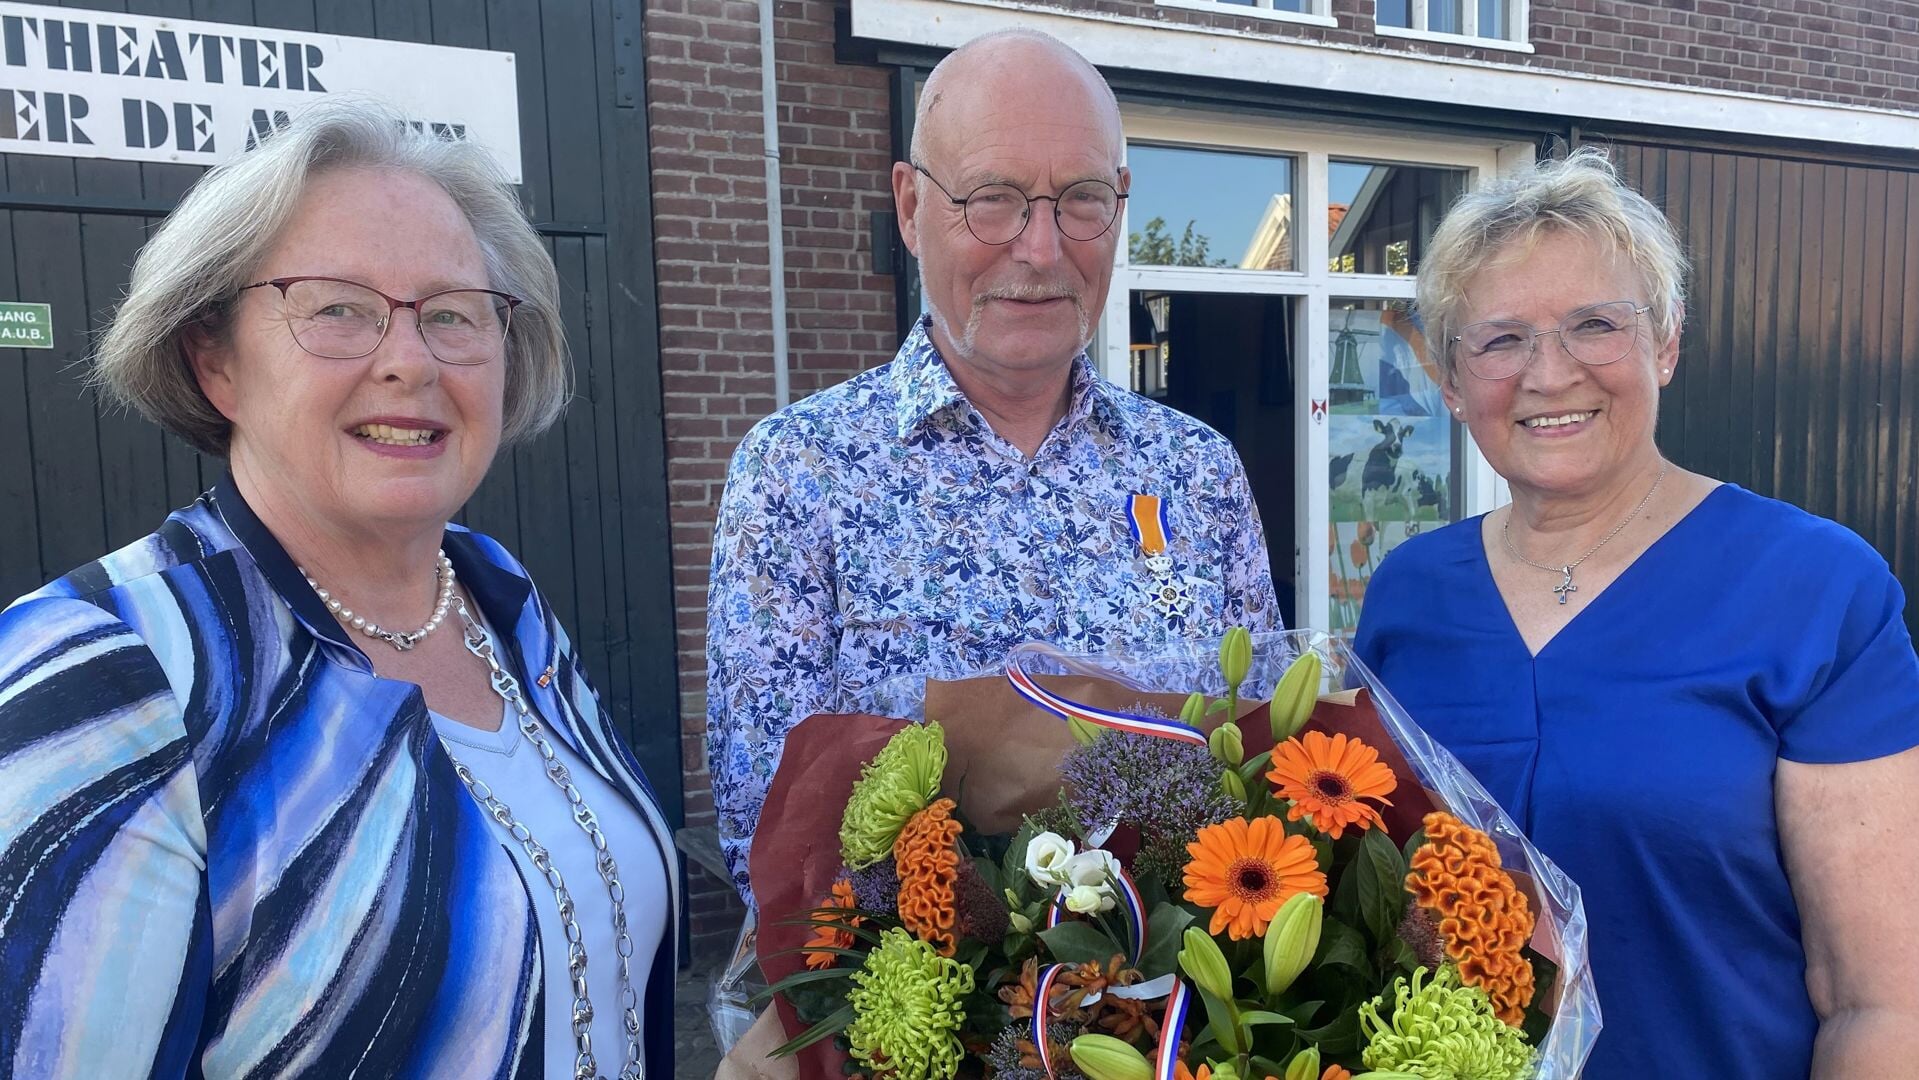 Rolf Wassens wordt geflankeerd door zijn vrouw en burgemeester Korthuis. .